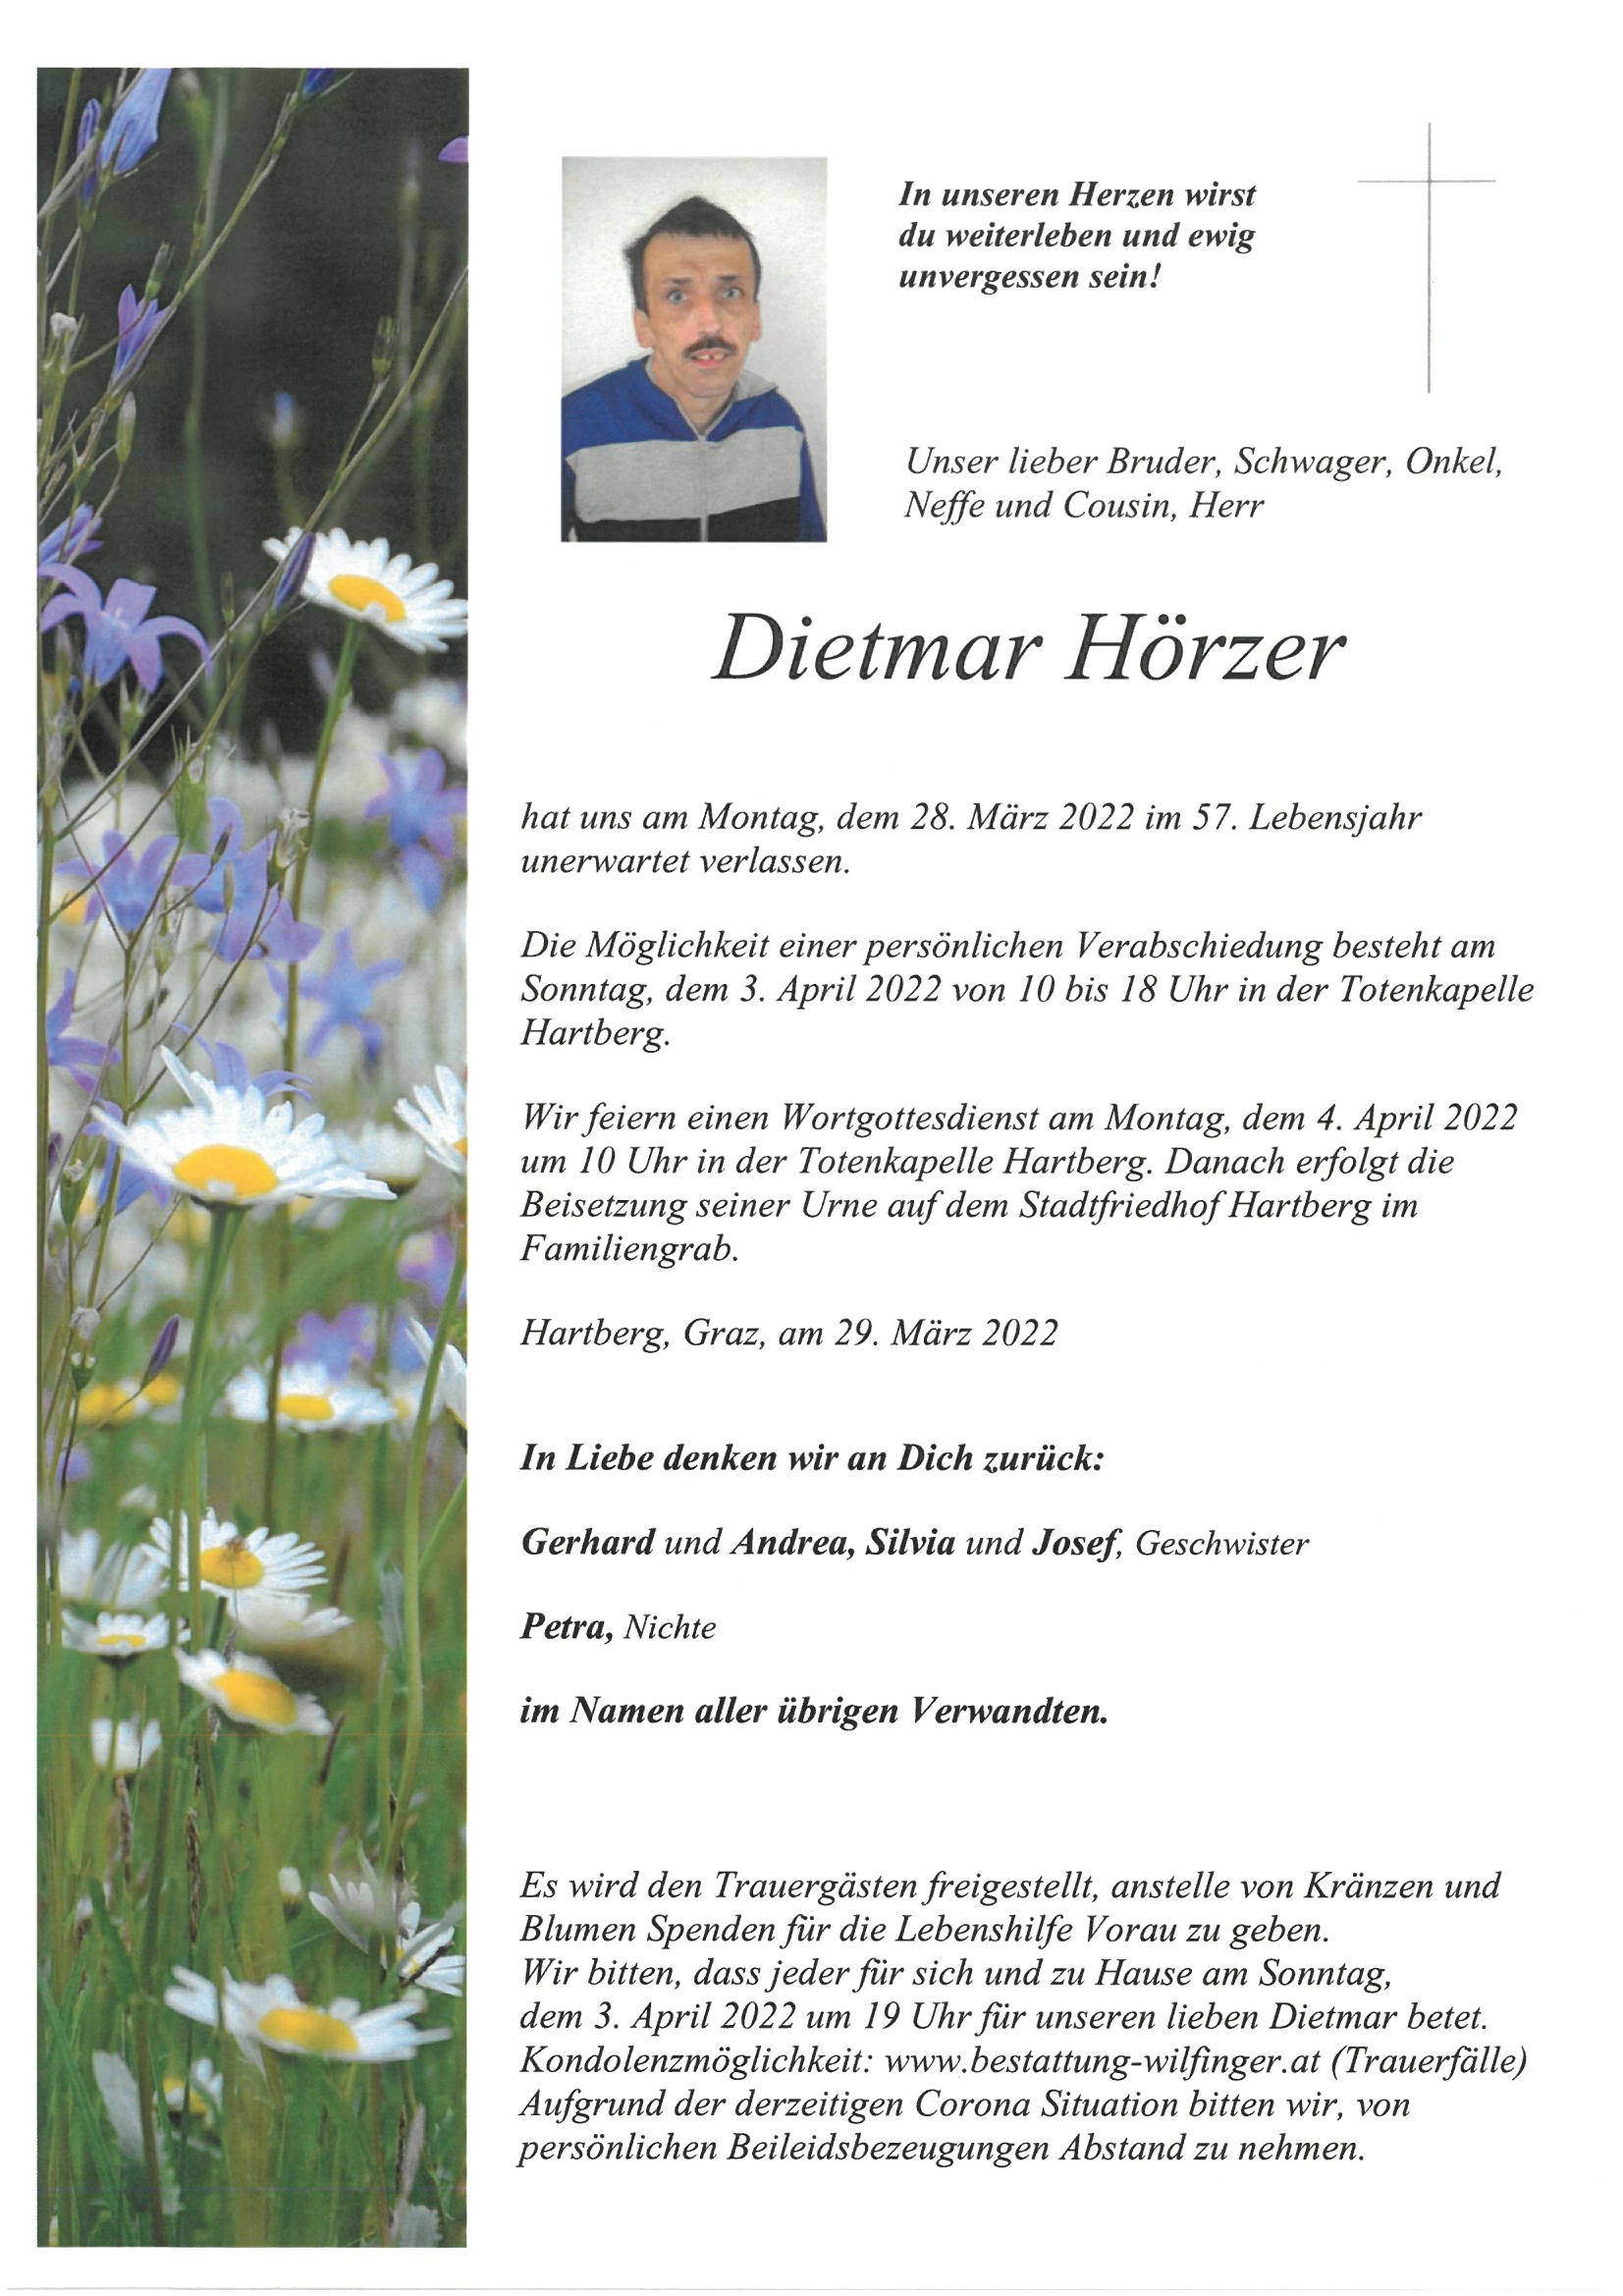 Dietmar Hörzer, Hartberg